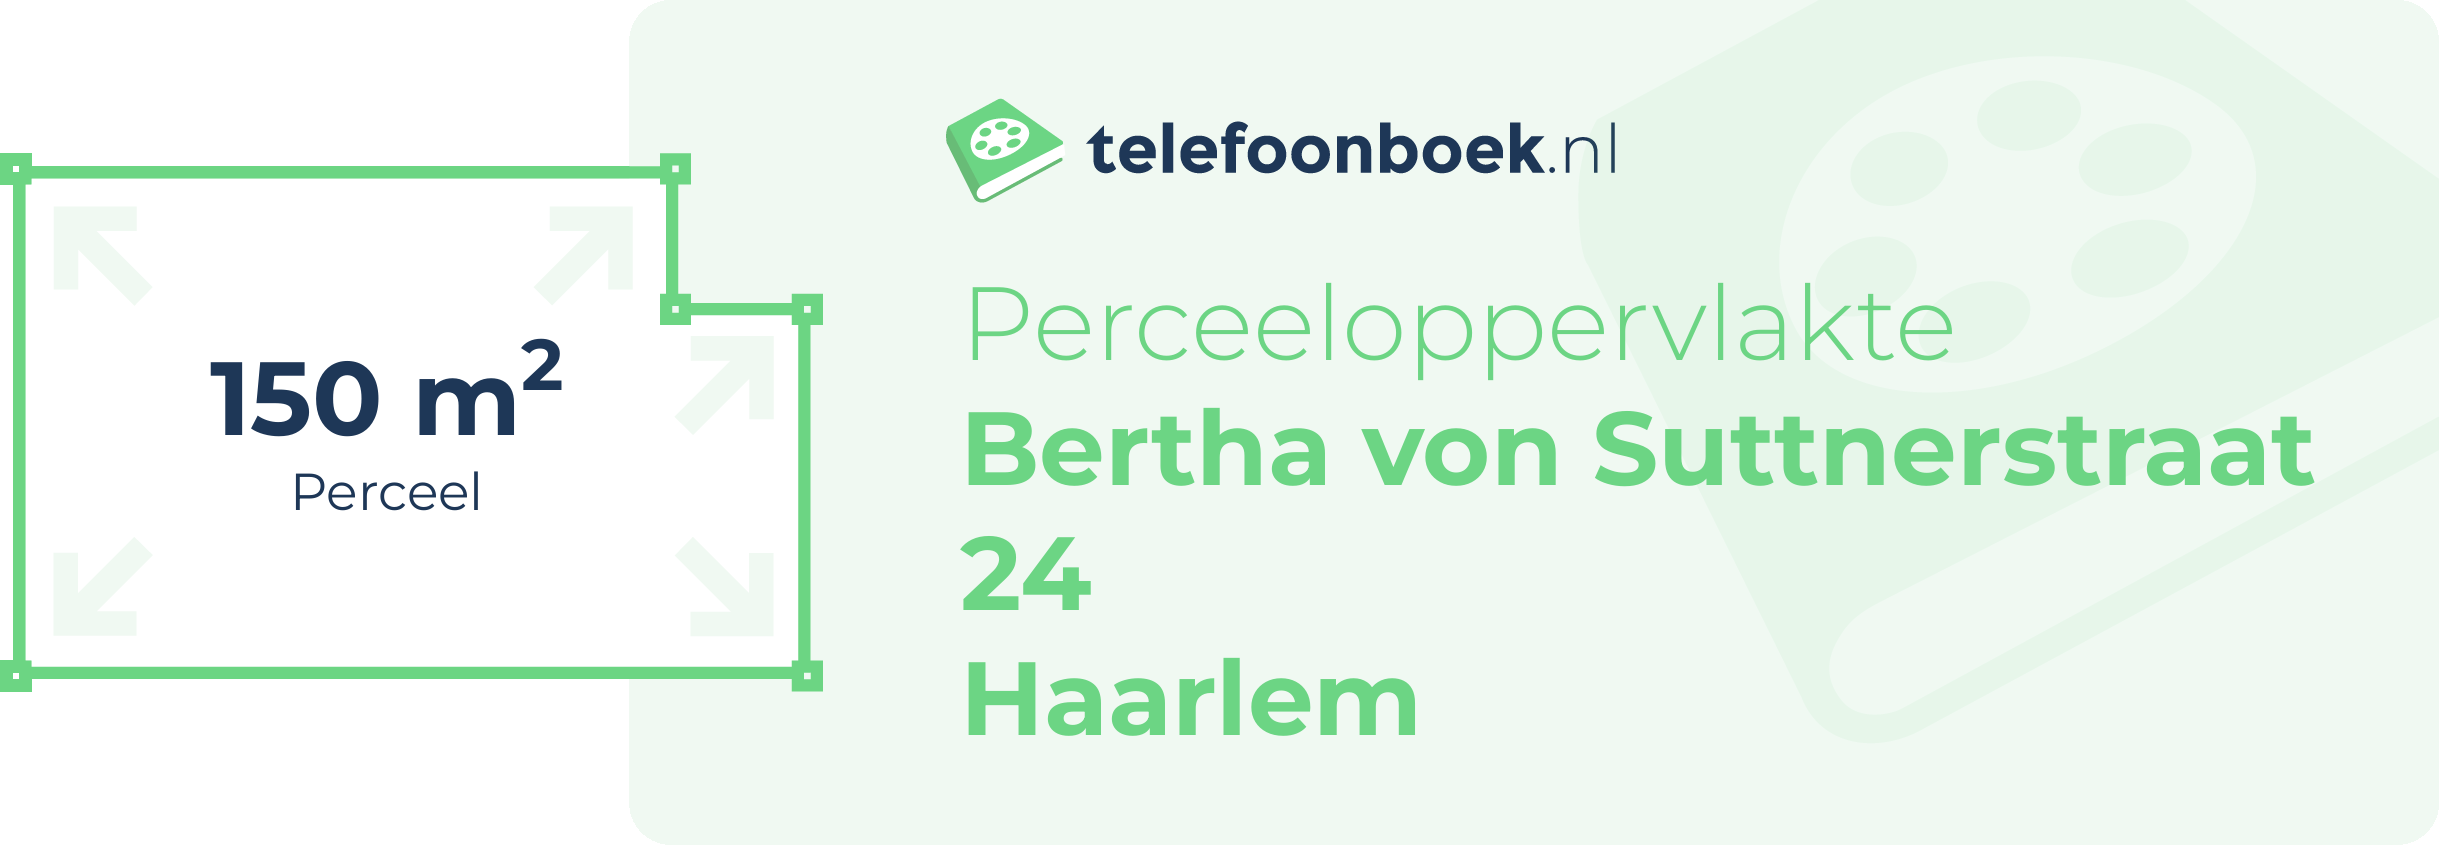 Perceeloppervlakte Bertha Von Suttnerstraat 24 Haarlem